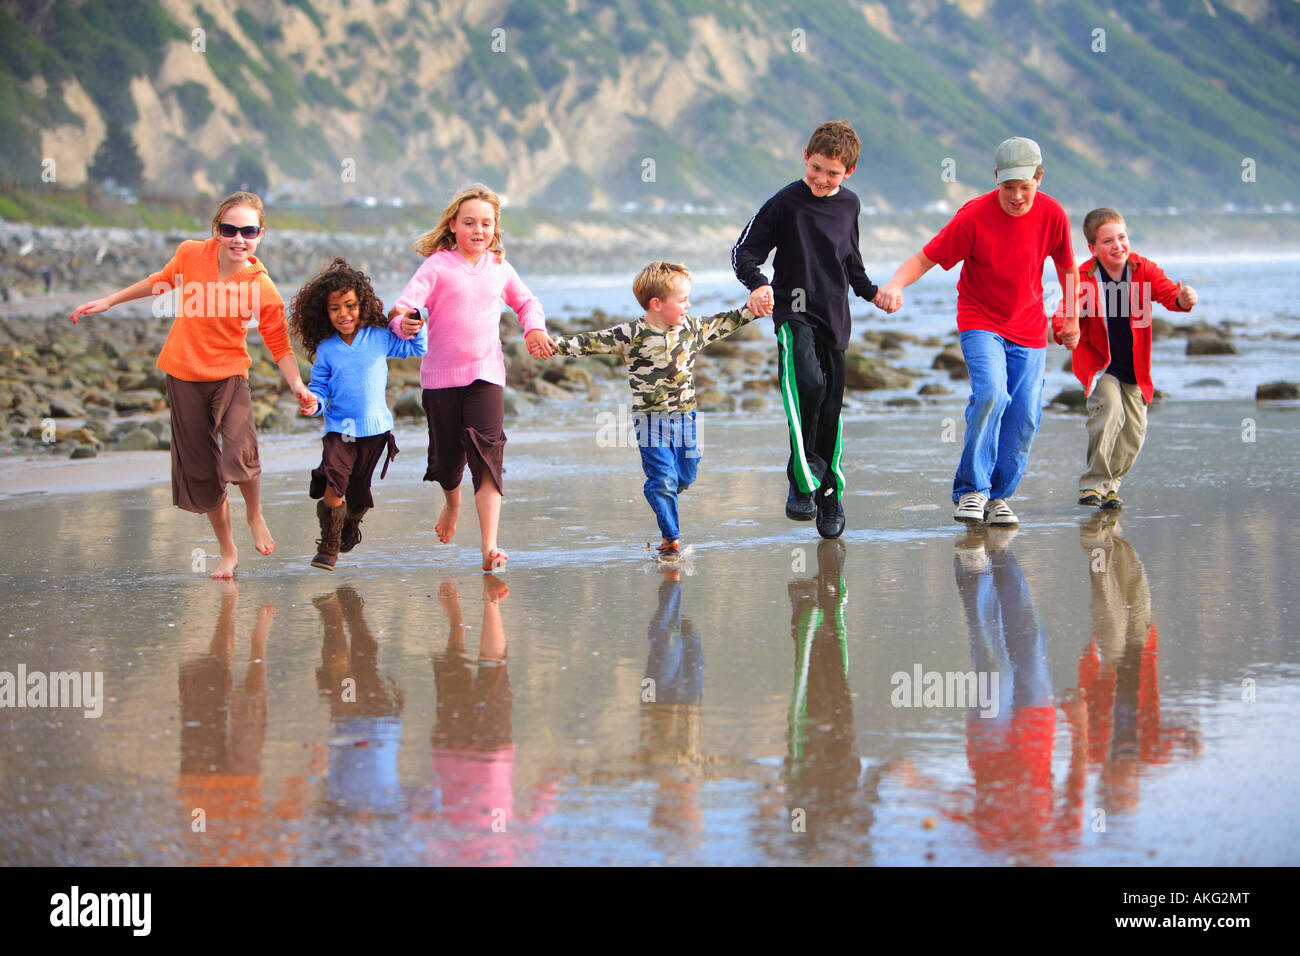 Kinder laufen am Strand, dass Muschel Shoals Carpenteria Santa Barbara County Kalifornien Vereinigte Staaten von Amerika (MR) Stockfoto